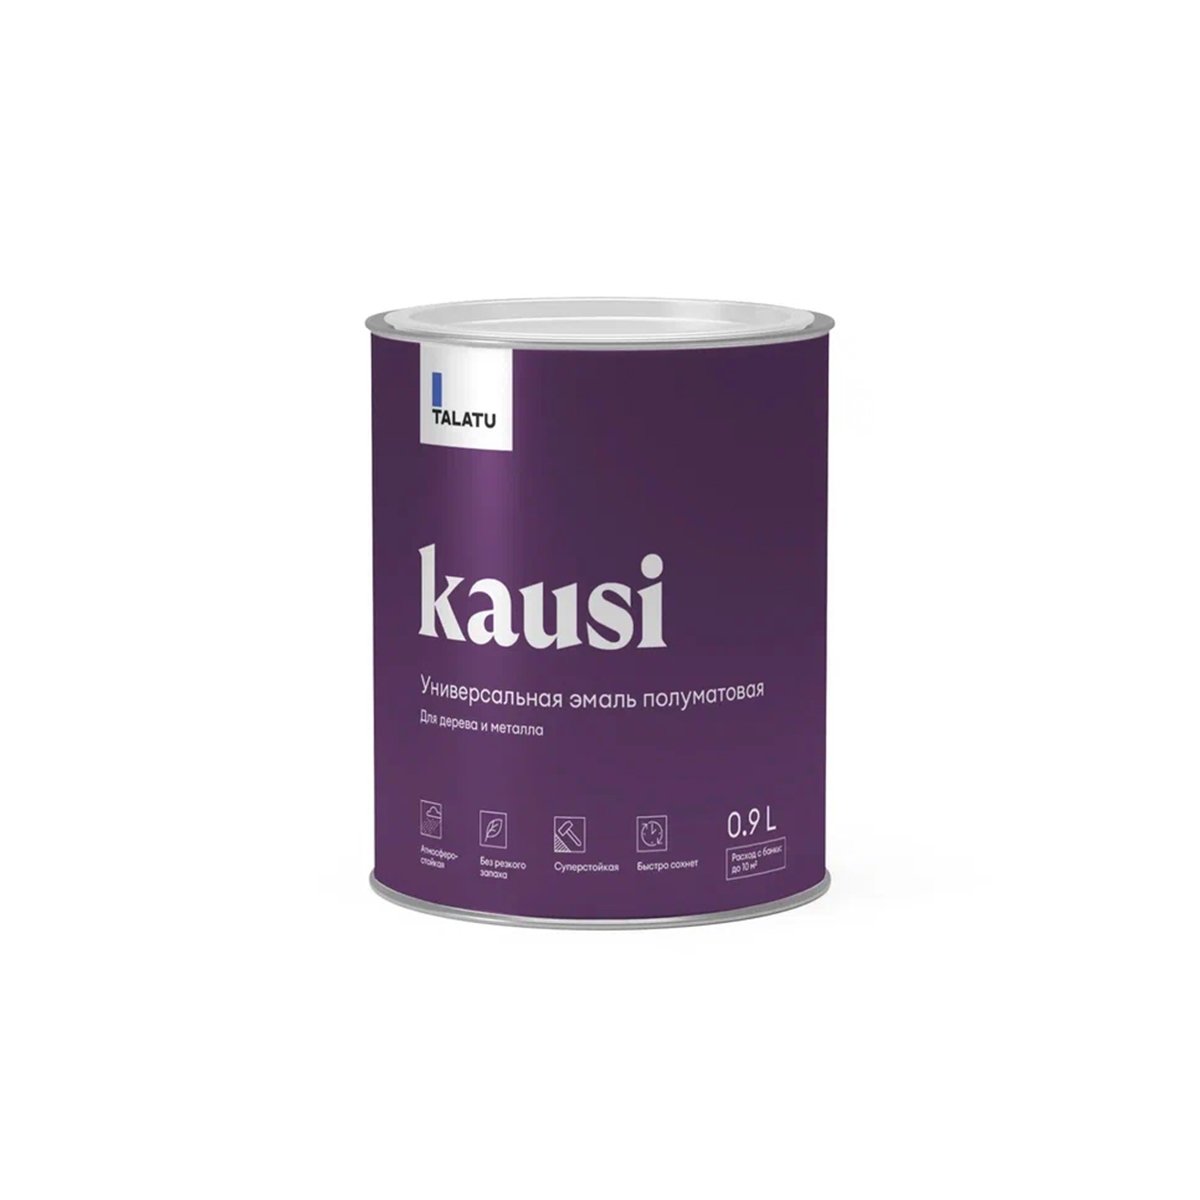 Эмаль универсальная Talatu Kausi, алкидная, полуматовая, база C, бесцветная, 0,9 л алкидная эмаль для радиаторов dali